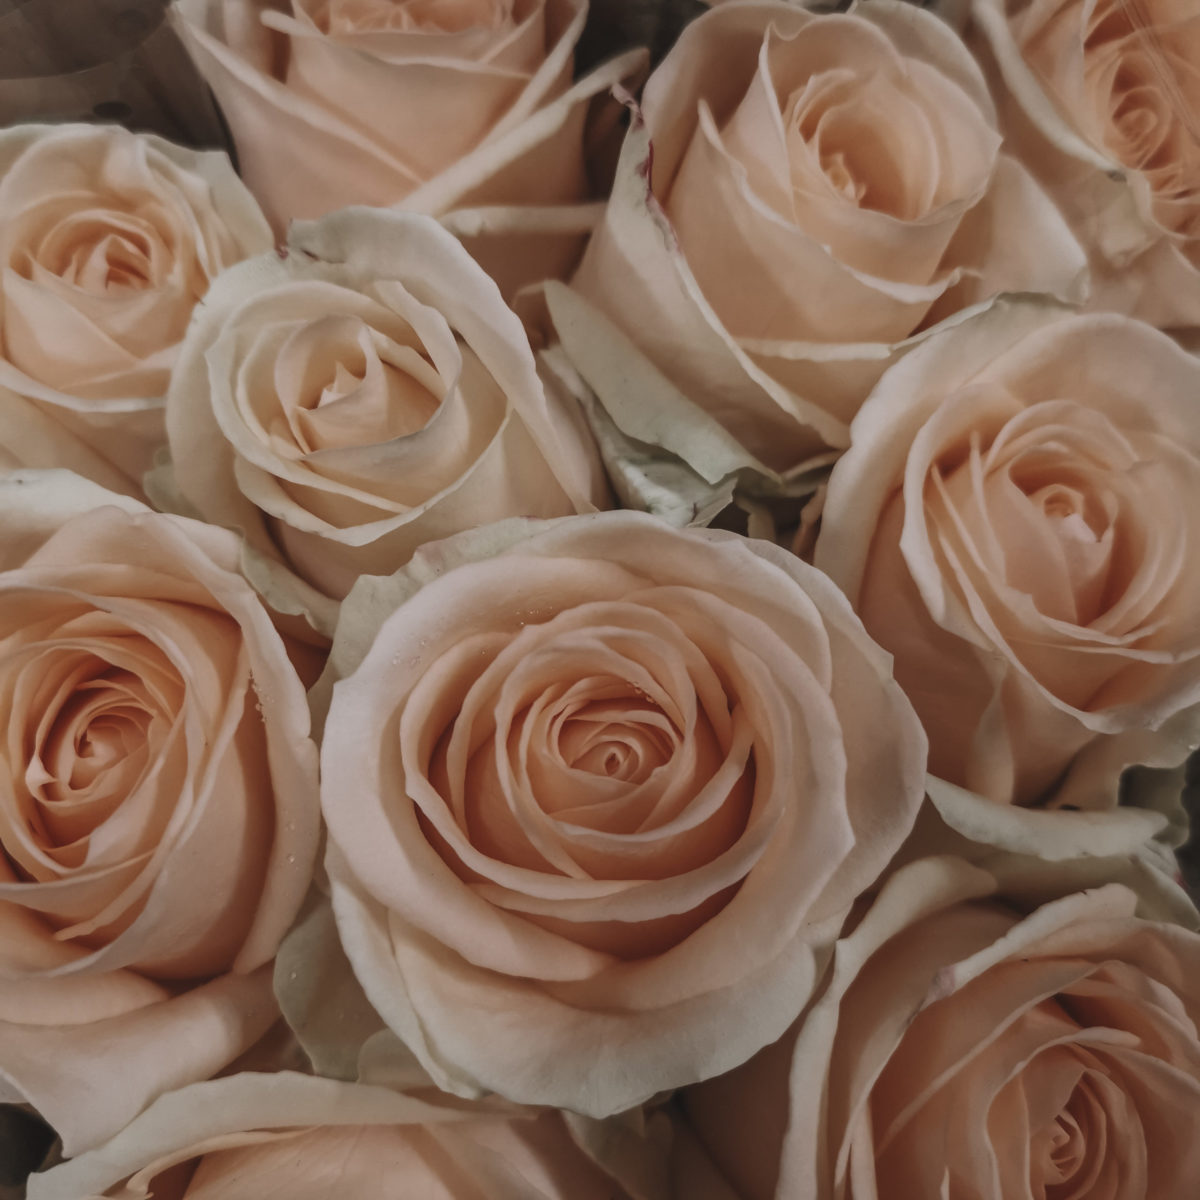 Rose rose - EOS